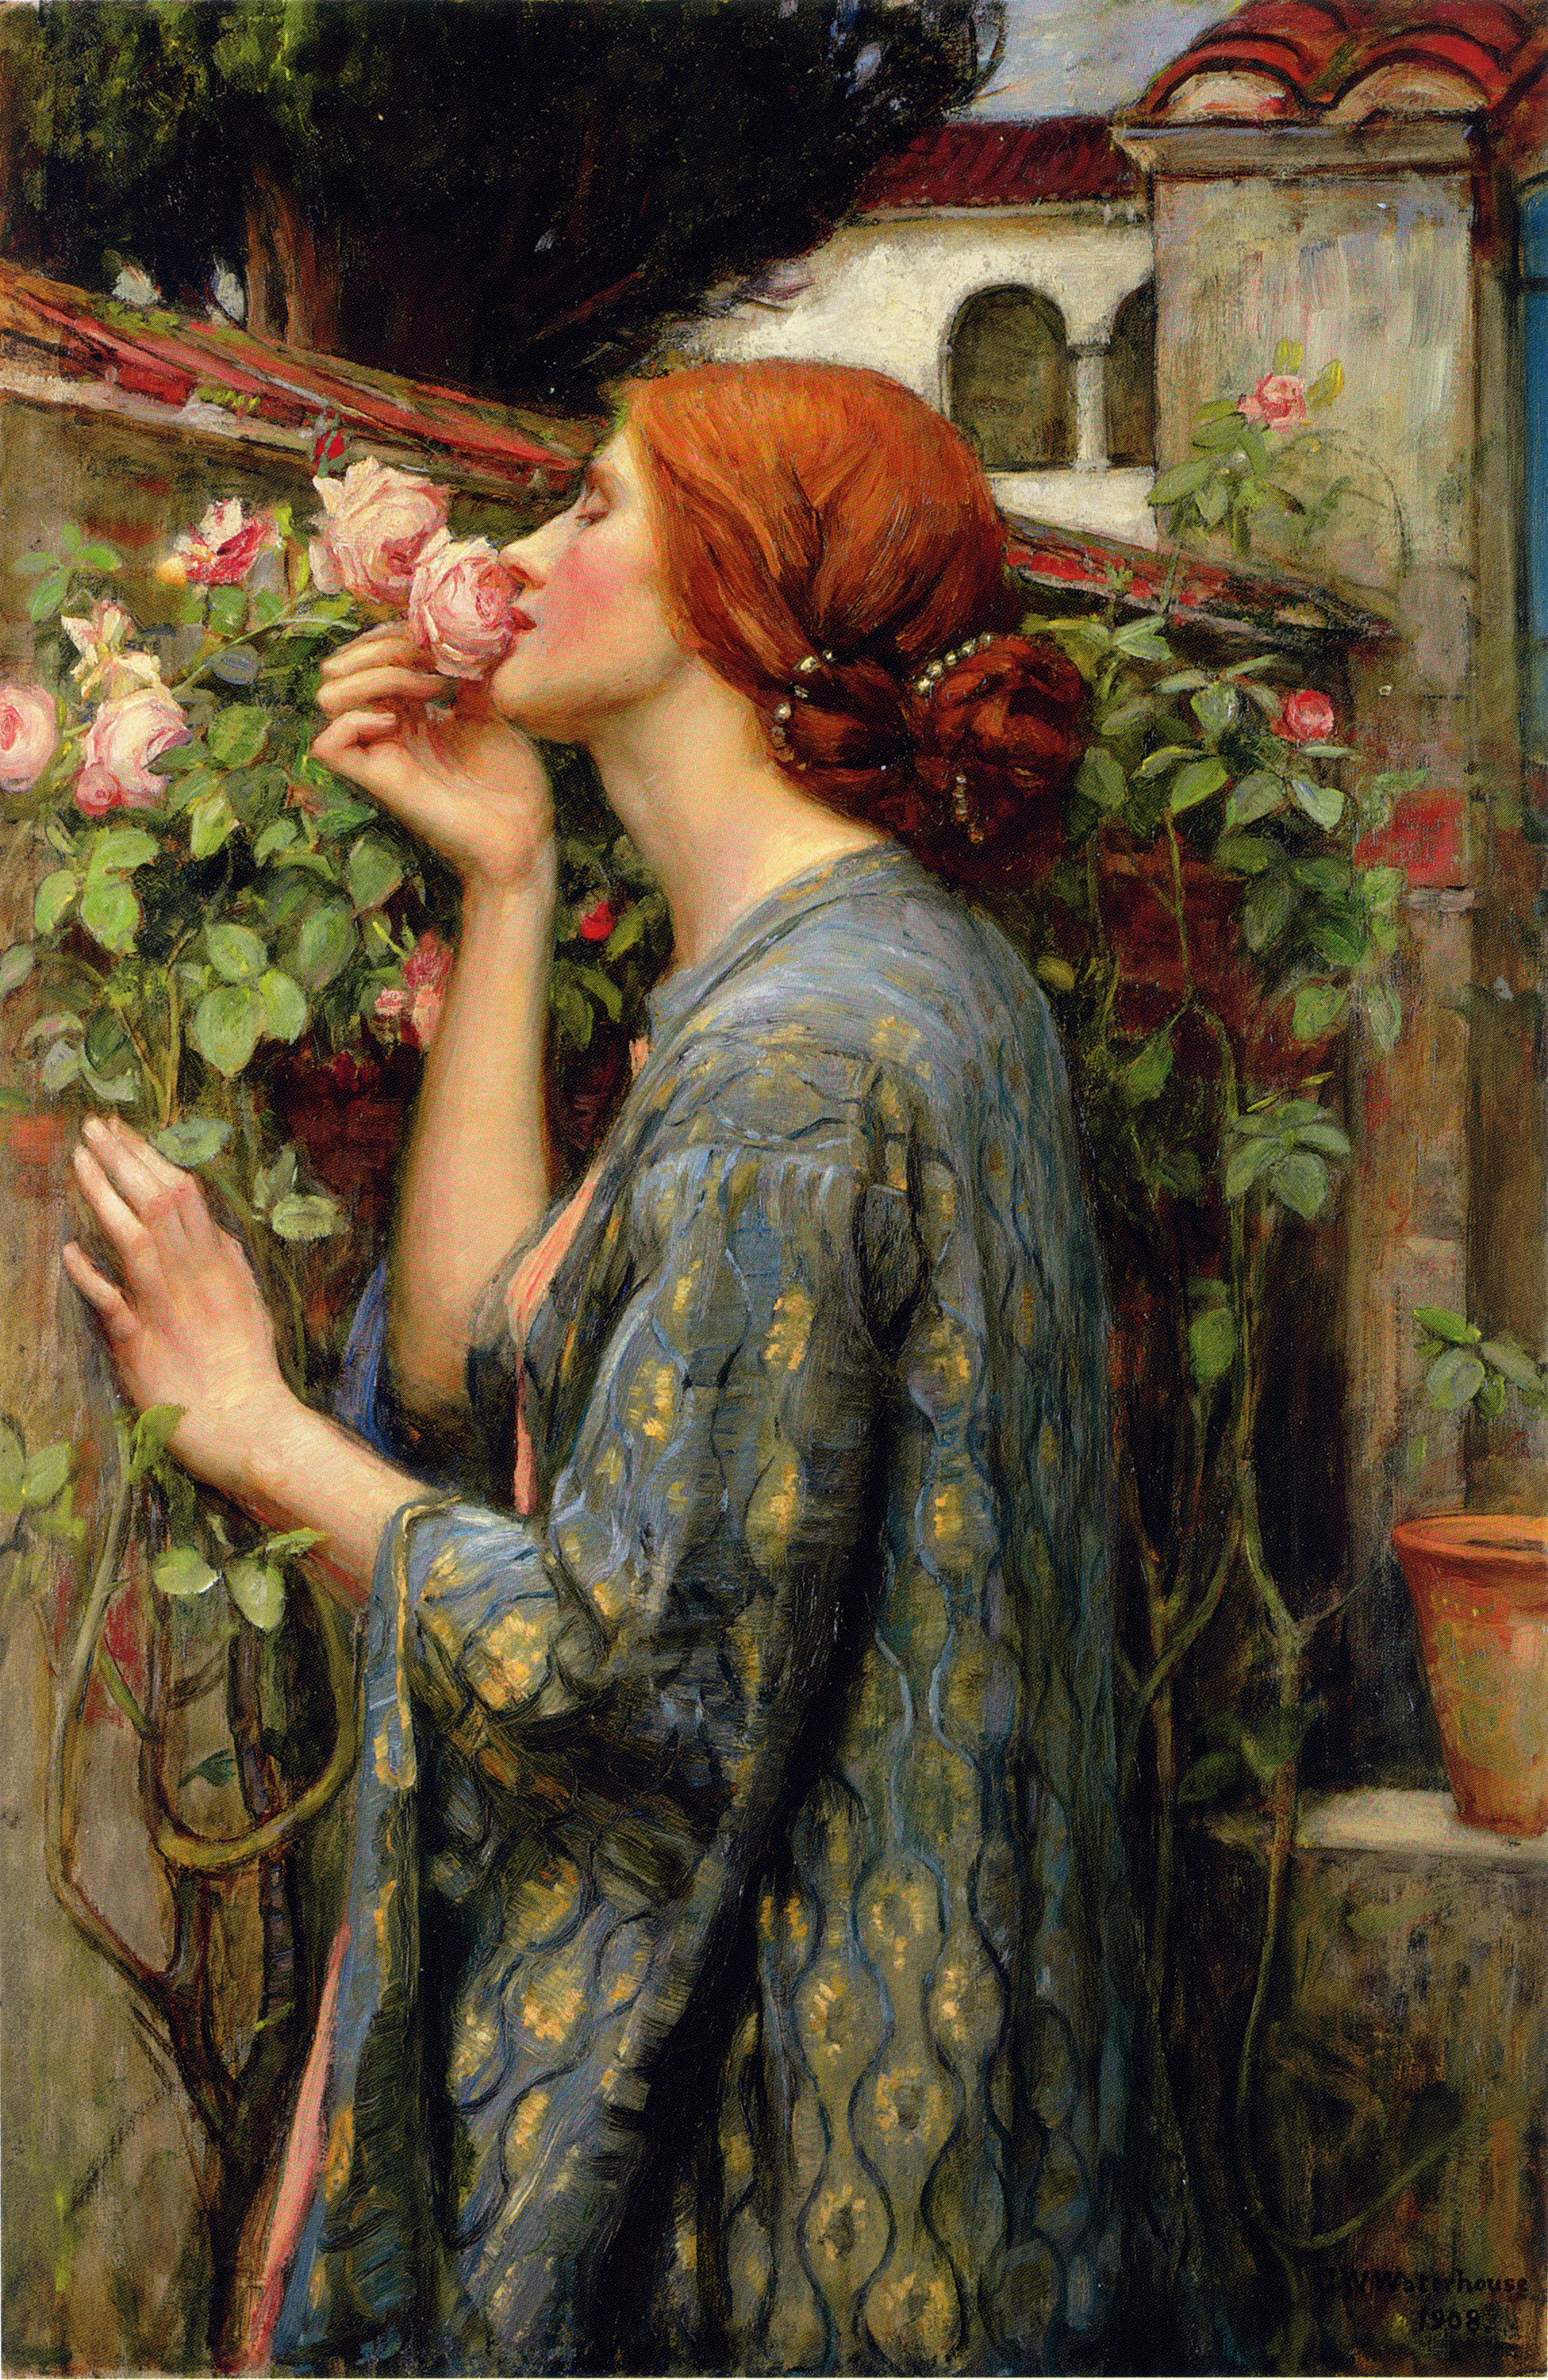 玫瑰的灵魂 by 约翰 威廉·沃特豪斯 - 1903 - 88.3 x 59.1 cm 